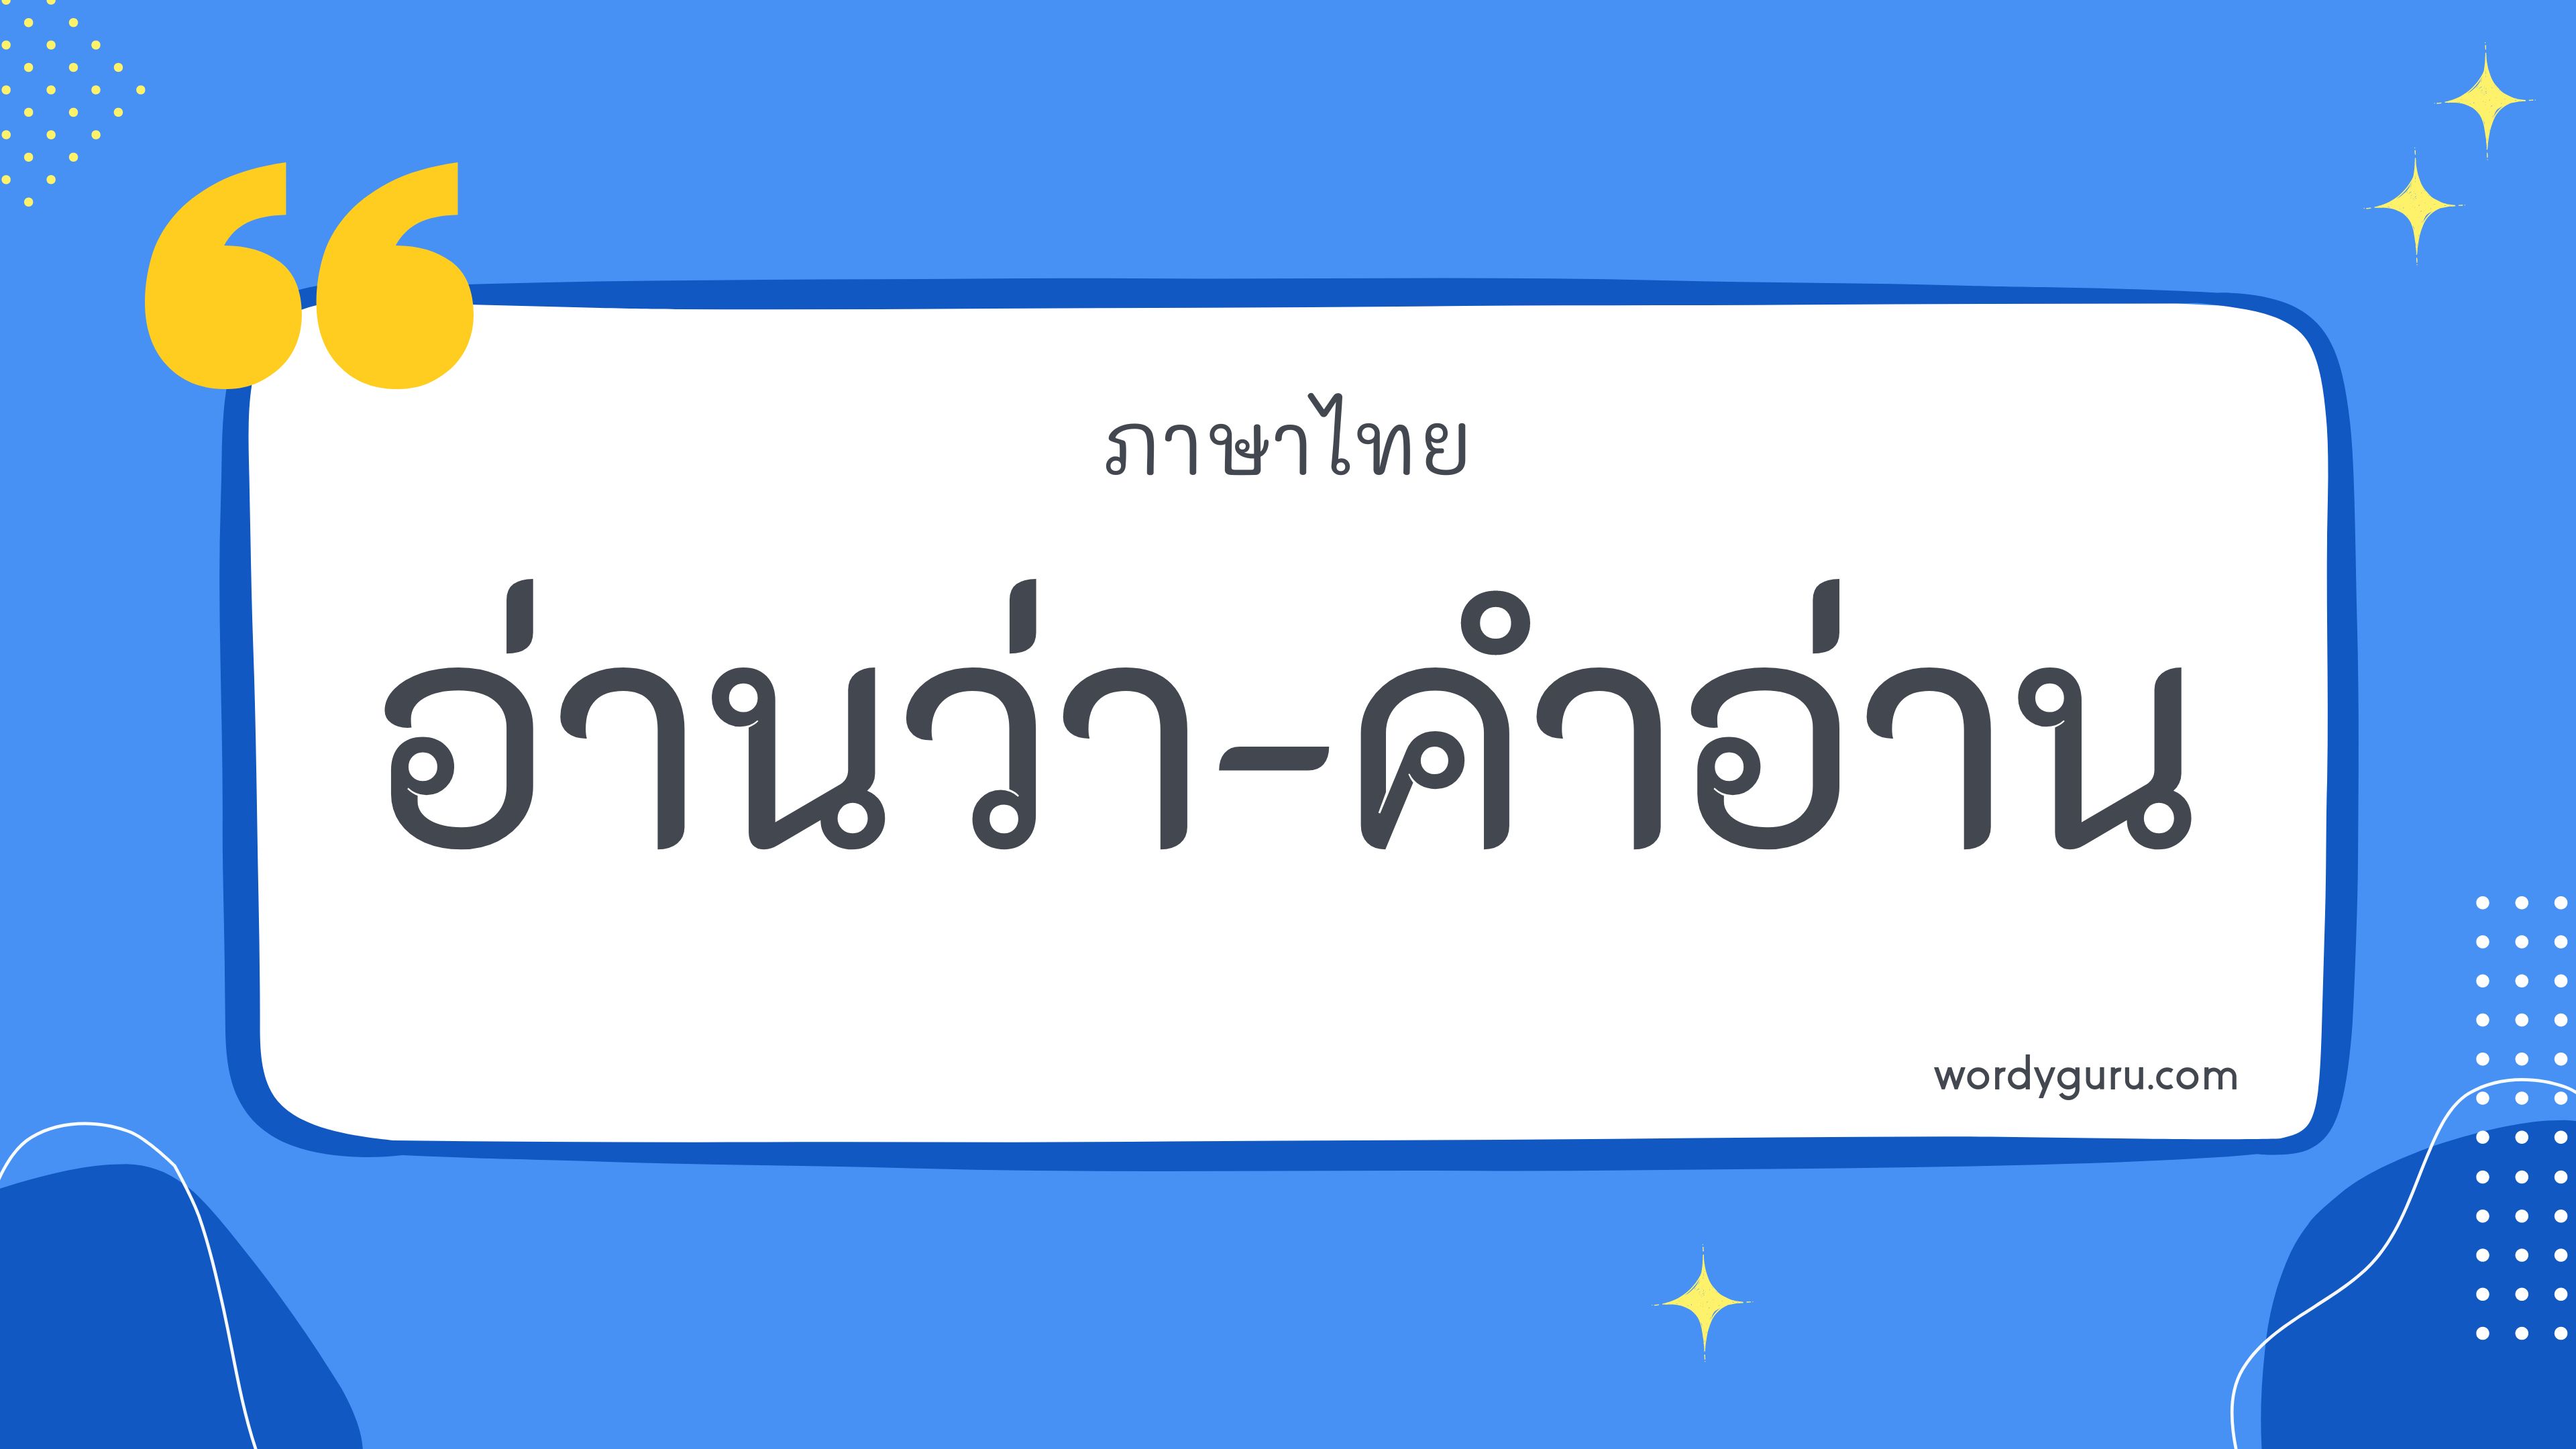 คำในภาษาไทย 200 คำ ที่นิยมใช้ พบเห็นบ่อย ในชีวิตประจำวัน